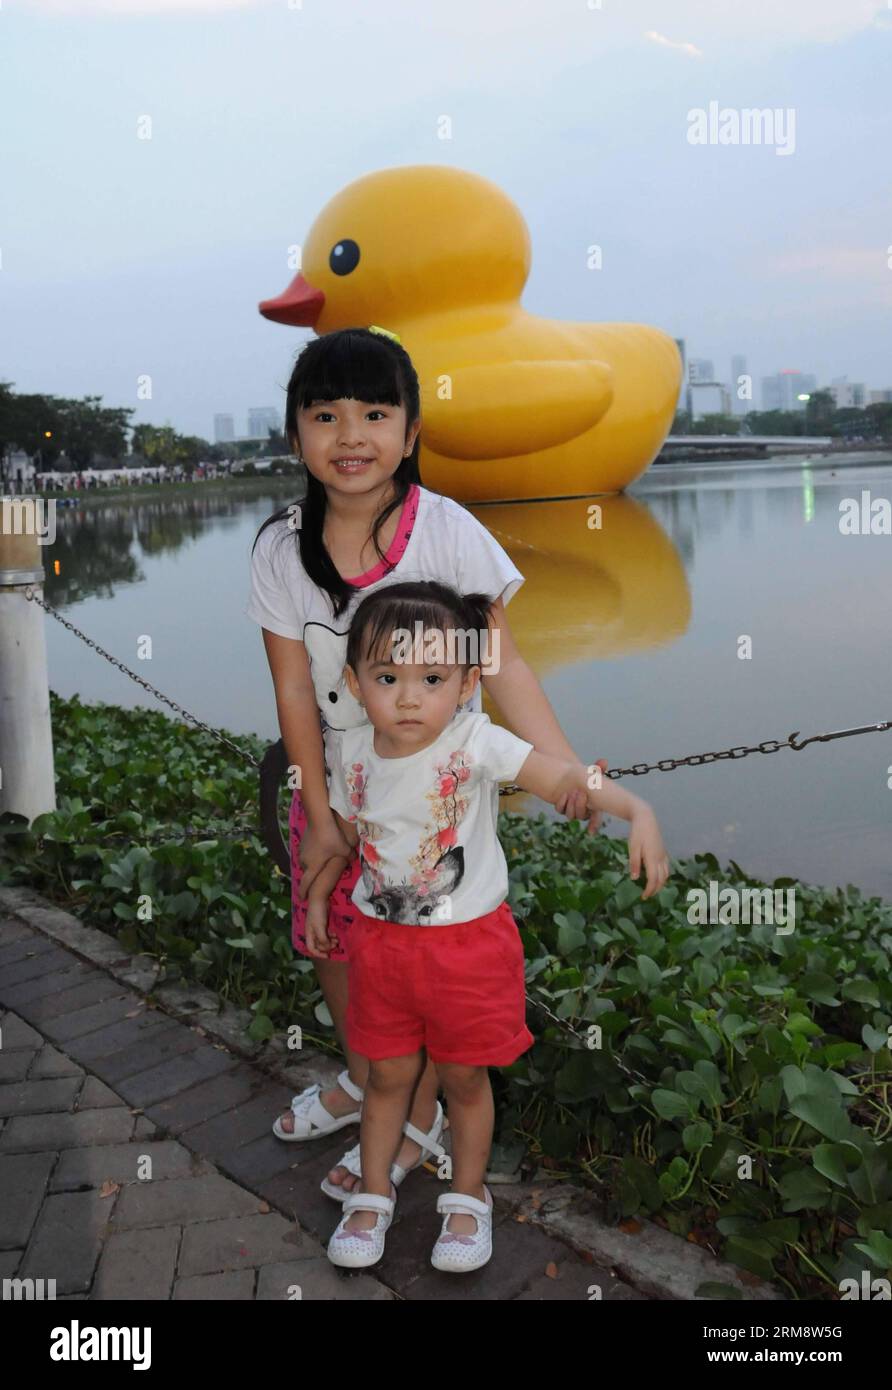 (140427) -- HO CHI MINH STADT, April 27 (Xinhua) -- Kinder posieren für Fotos mit der riesigen Gummiente in der Phu My Hung Wohngegend in Ho Chi Minh (HCM) Stadt, Vietnam, 26. April 2014. Eine 18 Meter hohe Gummiente, die Menschen auf der ganzen Welt in ihren Bann gezogen hat, wird am Crescent Lake im Wohngebiet Phu My Hung der HCM-Stadt von April 27 bis Mai 31 ausgestellt, berichteten lokale Medien am Samstag. Die Gummiente wurde vom niederländischen Künstler Florentijn Hofman entworfen und startete 2007 eine Tour mit dem Namen Spread Joys Around the World. HCM City ist der 16. Veranstaltungsort, an dem es angezeigt wird. (Xinhua/Tao Ju Stockfoto